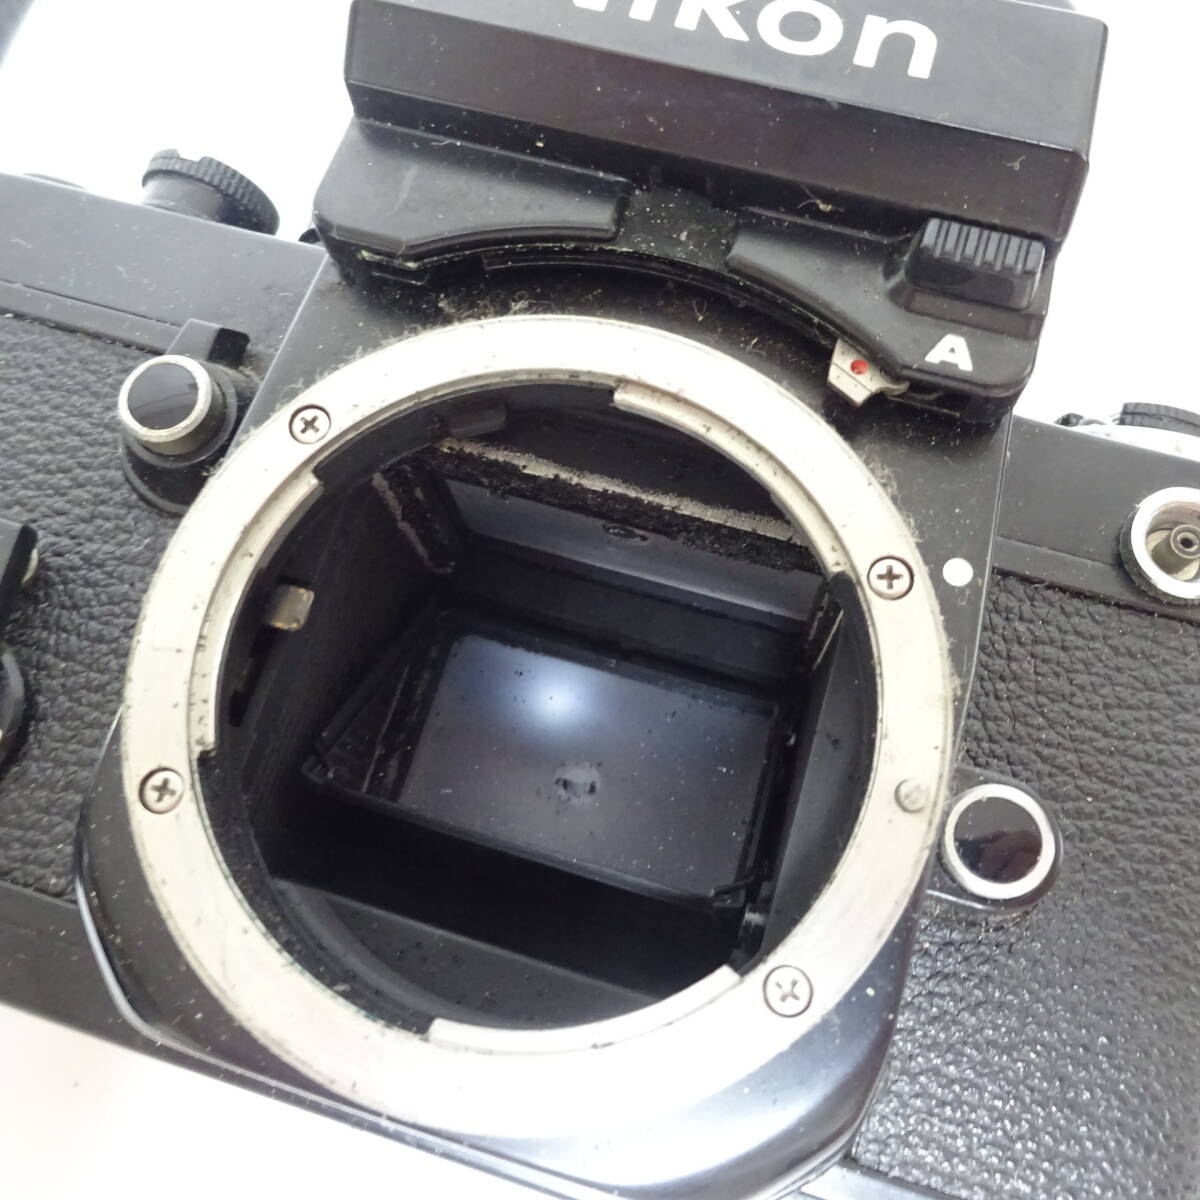 ニコン フィルム一眼カメラ 50mm 1:1.4 レンズ ケース劣化粉吹きあり Nikon 動作未確認 ジャンク品 80サイズ発送 KK-2629064-187-mrrz_画像4